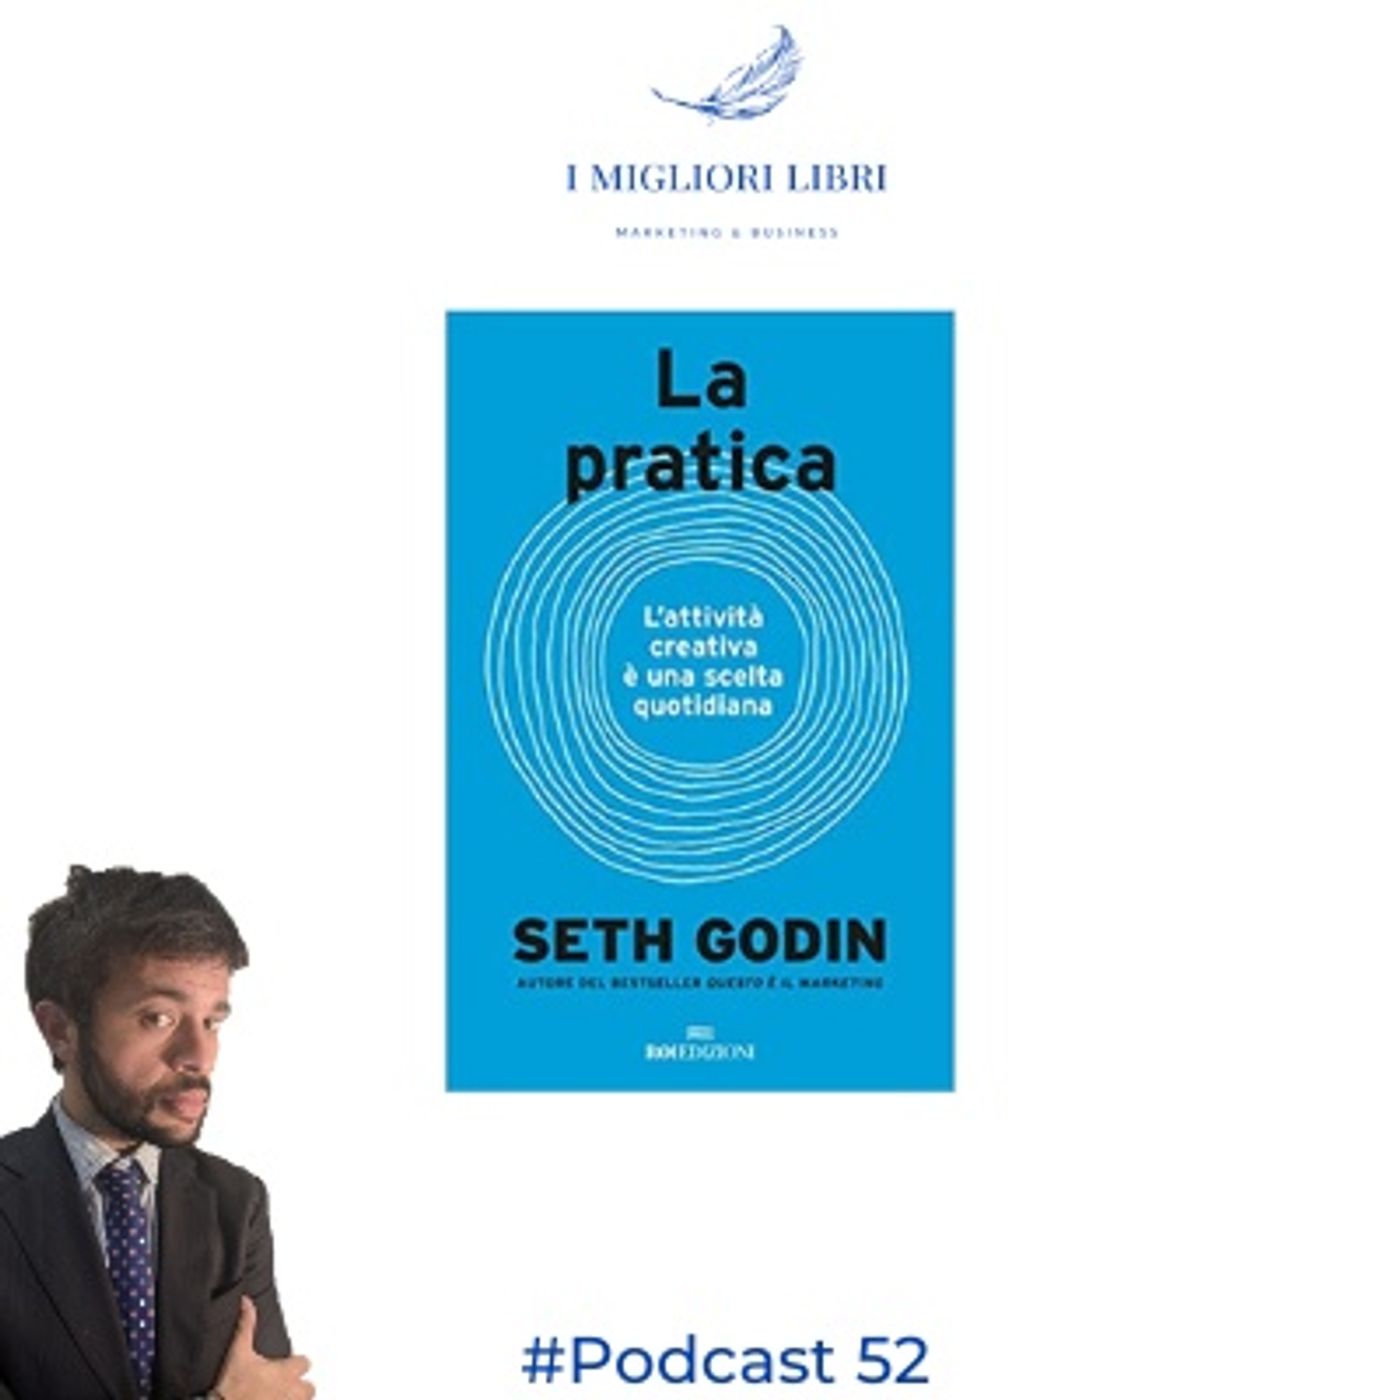 Episodio 52 - "La pratica" di S.Godin - I Migliori Libri - Marketing & Business